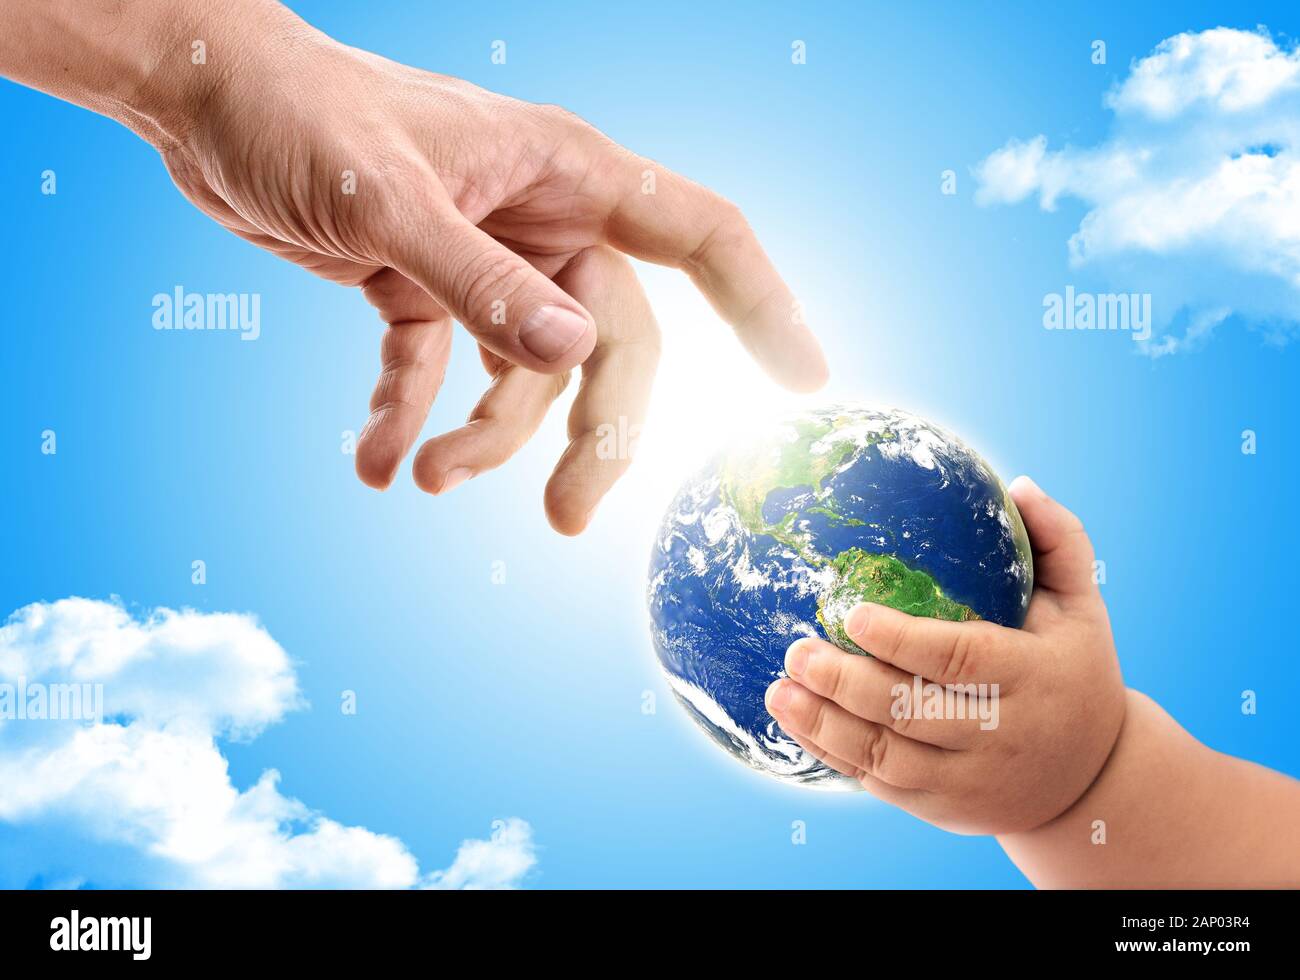 Die Hand eines Erwachsenen Übergabe Planeten Erde zu ein Baby. Konzept der vorbei an den Planeten an die nächste Generation weiter. Stockfoto